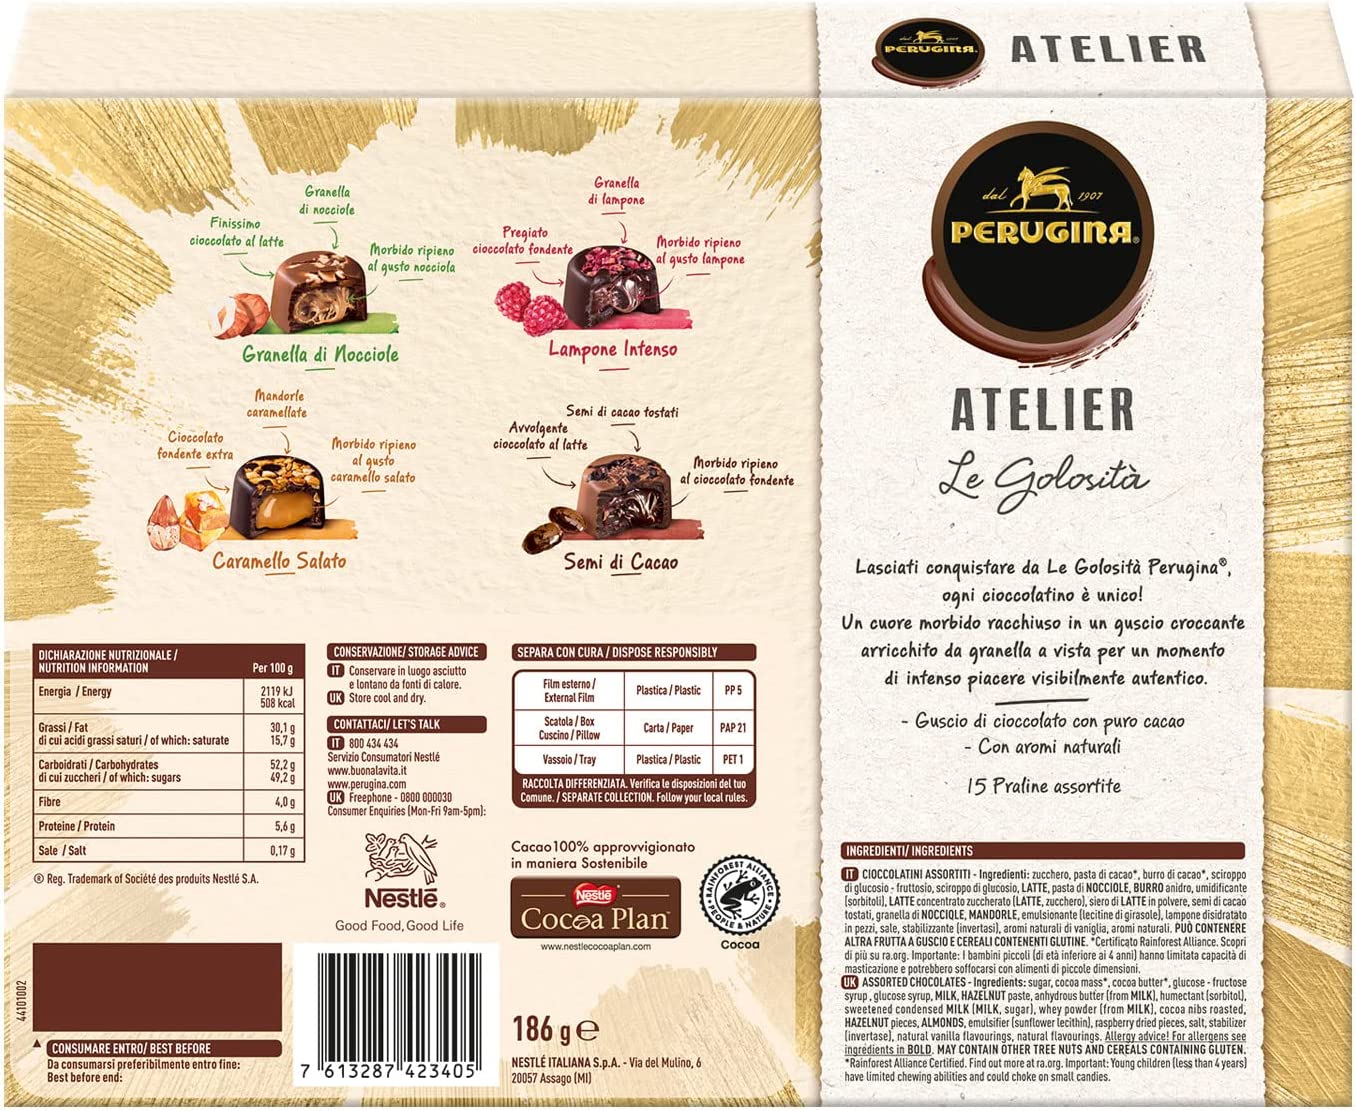 Perugina Atelier Le Golosità Cioccolatini Assortiti al Latte Finissimo e Fondente Extra con Cremoso Ripieno Scatola Regalo, 186g